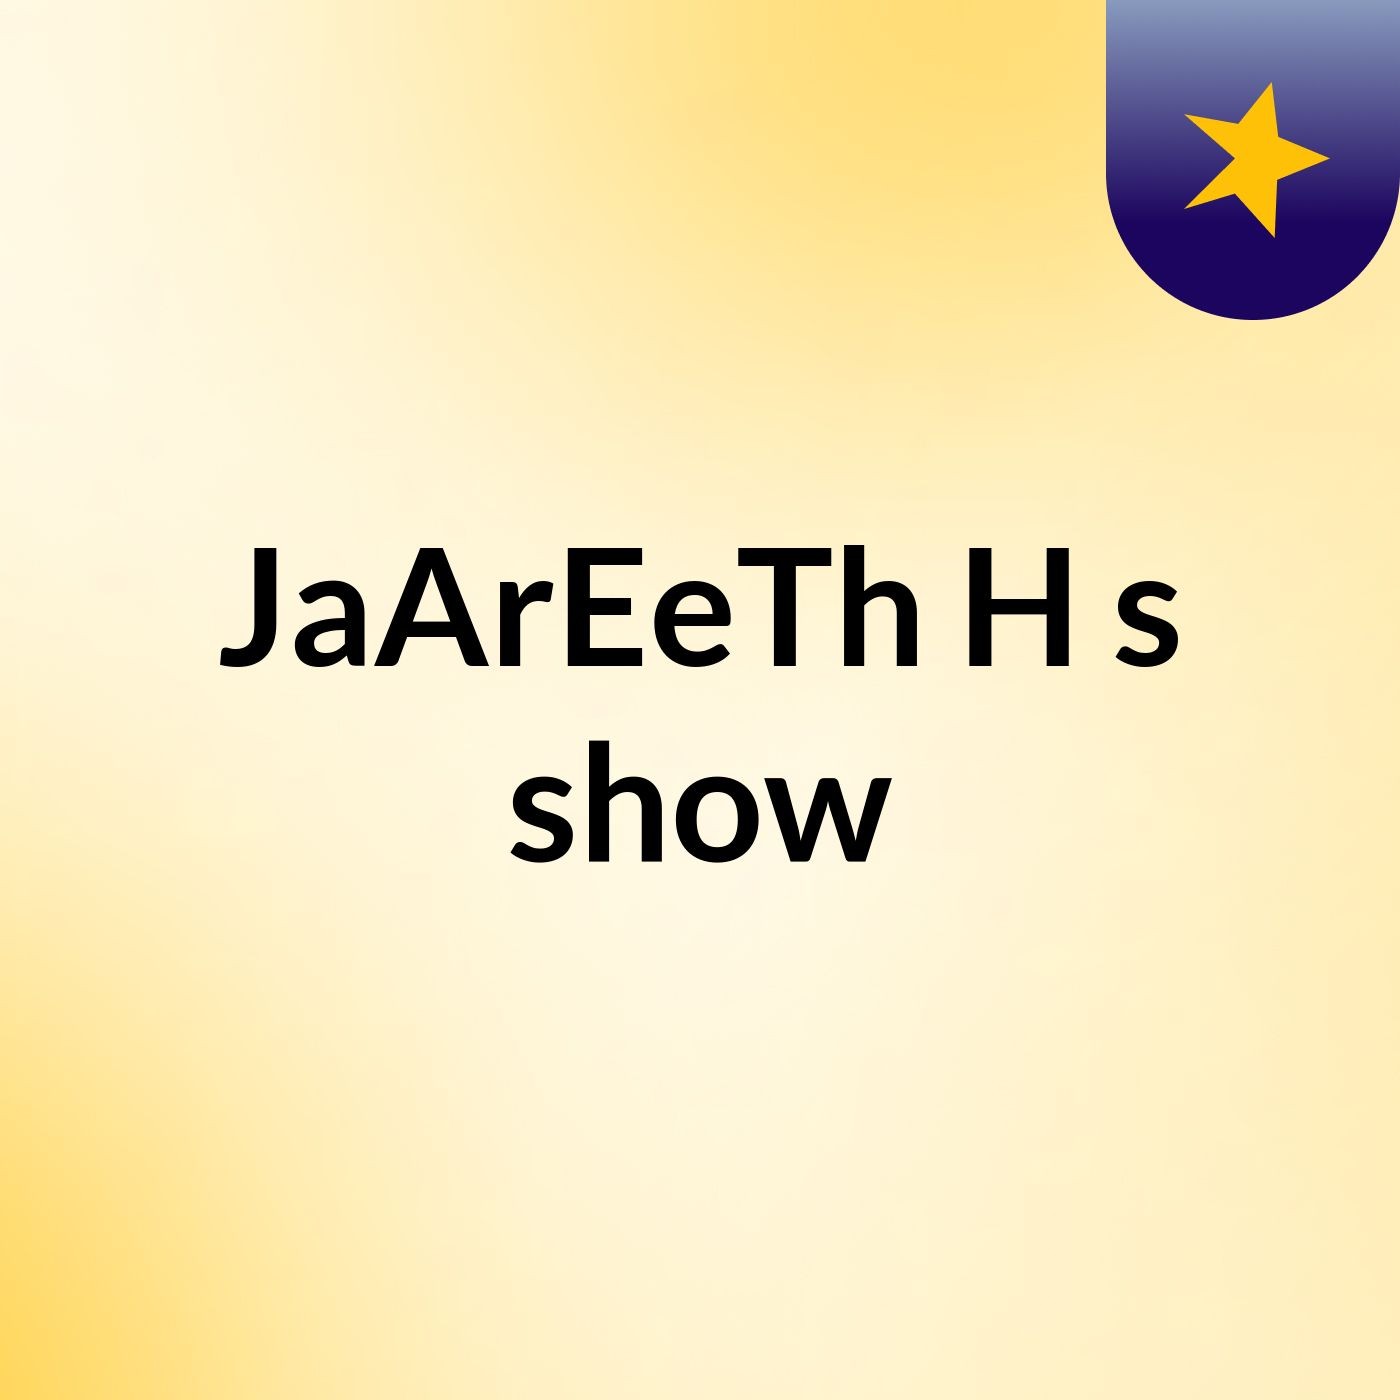 JaArEeTh H's show